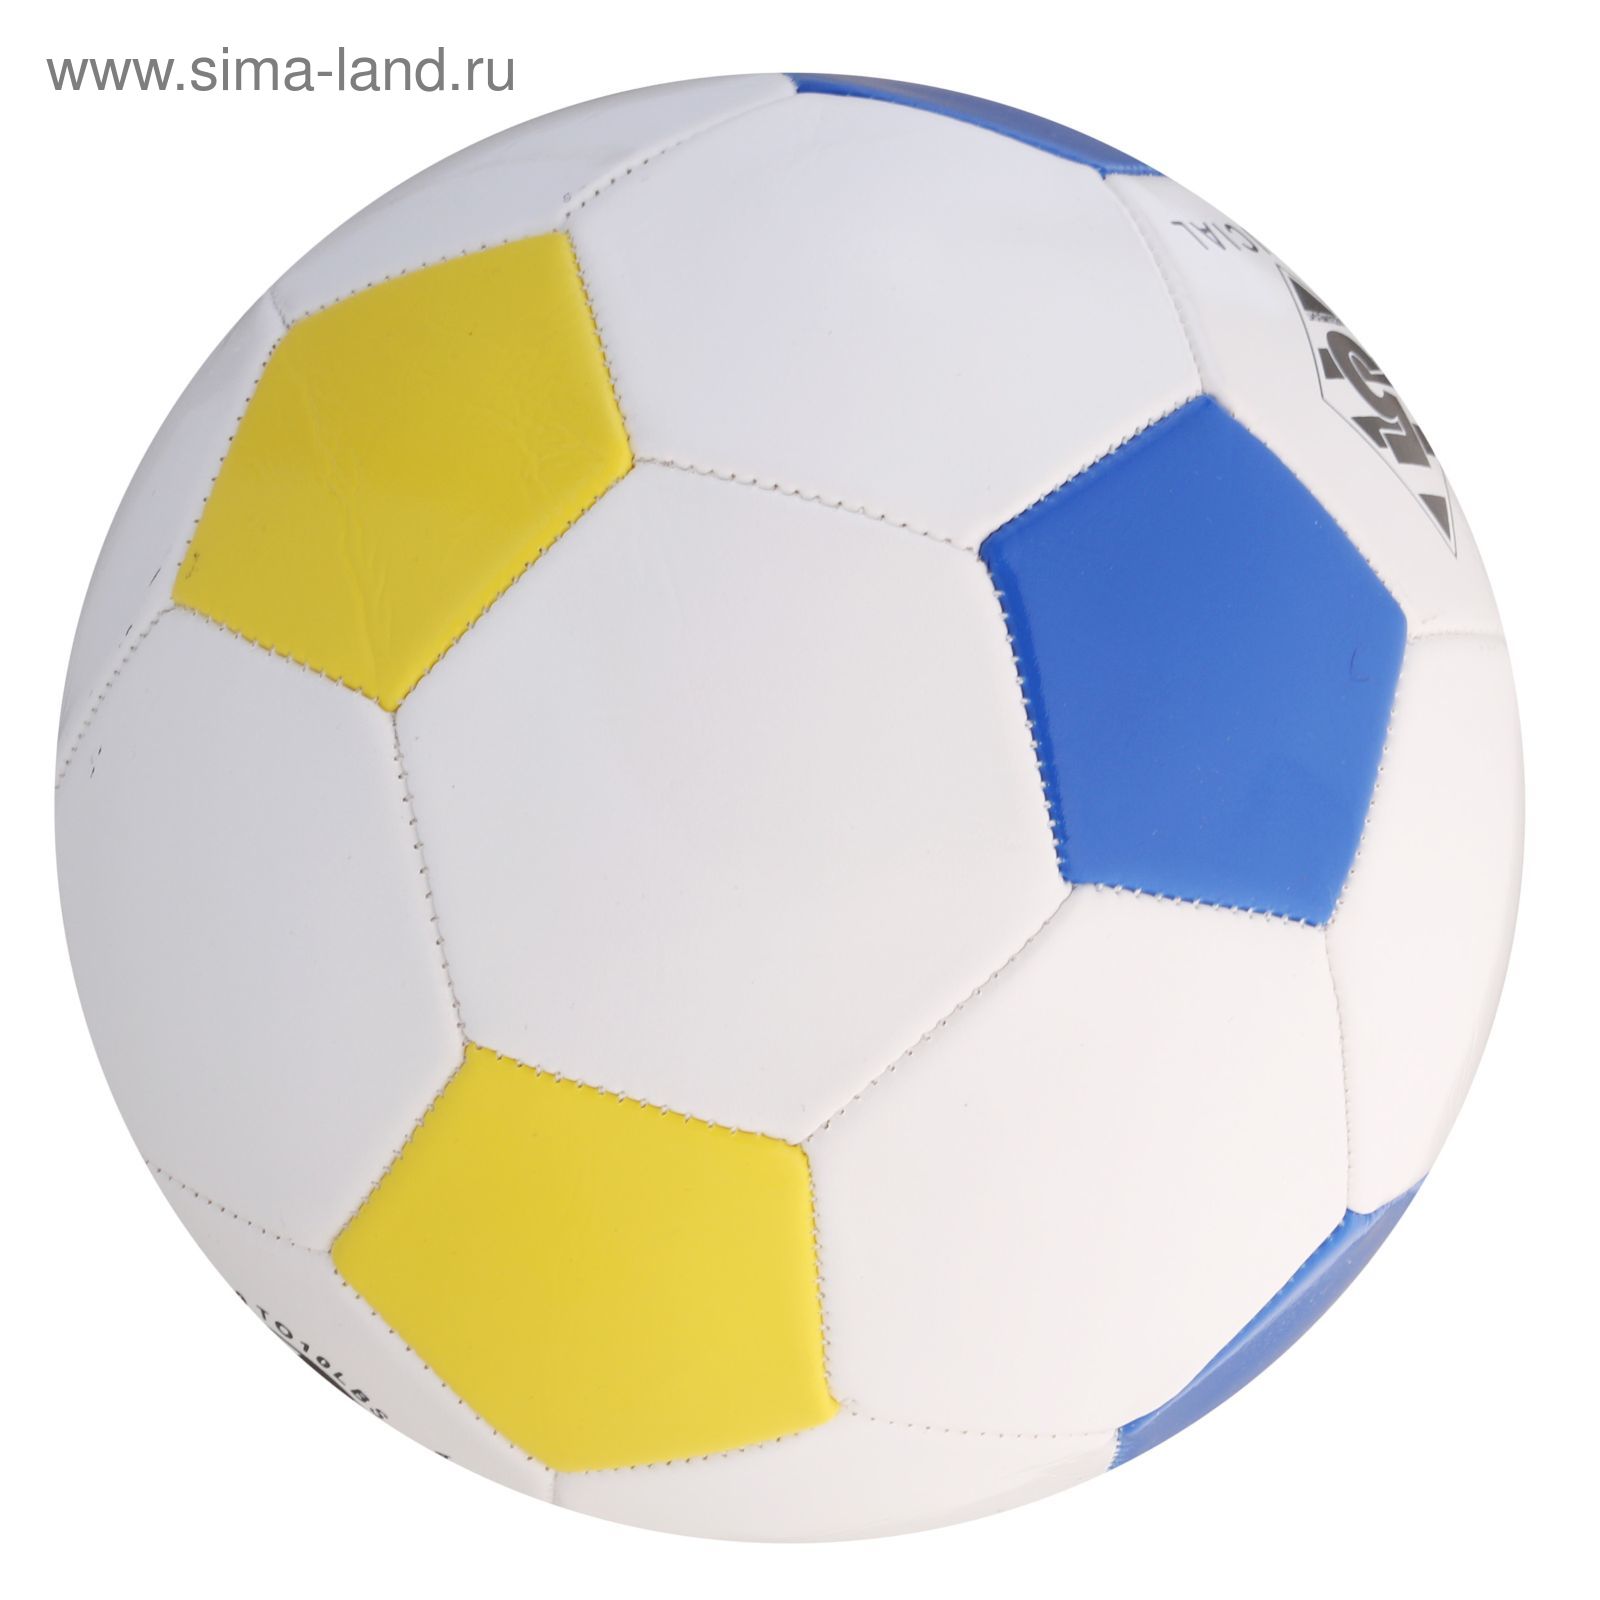 Мяч футбольный Сlassic 32 панели, PVC, 2 подслоя, машинная сшивка, размер 5